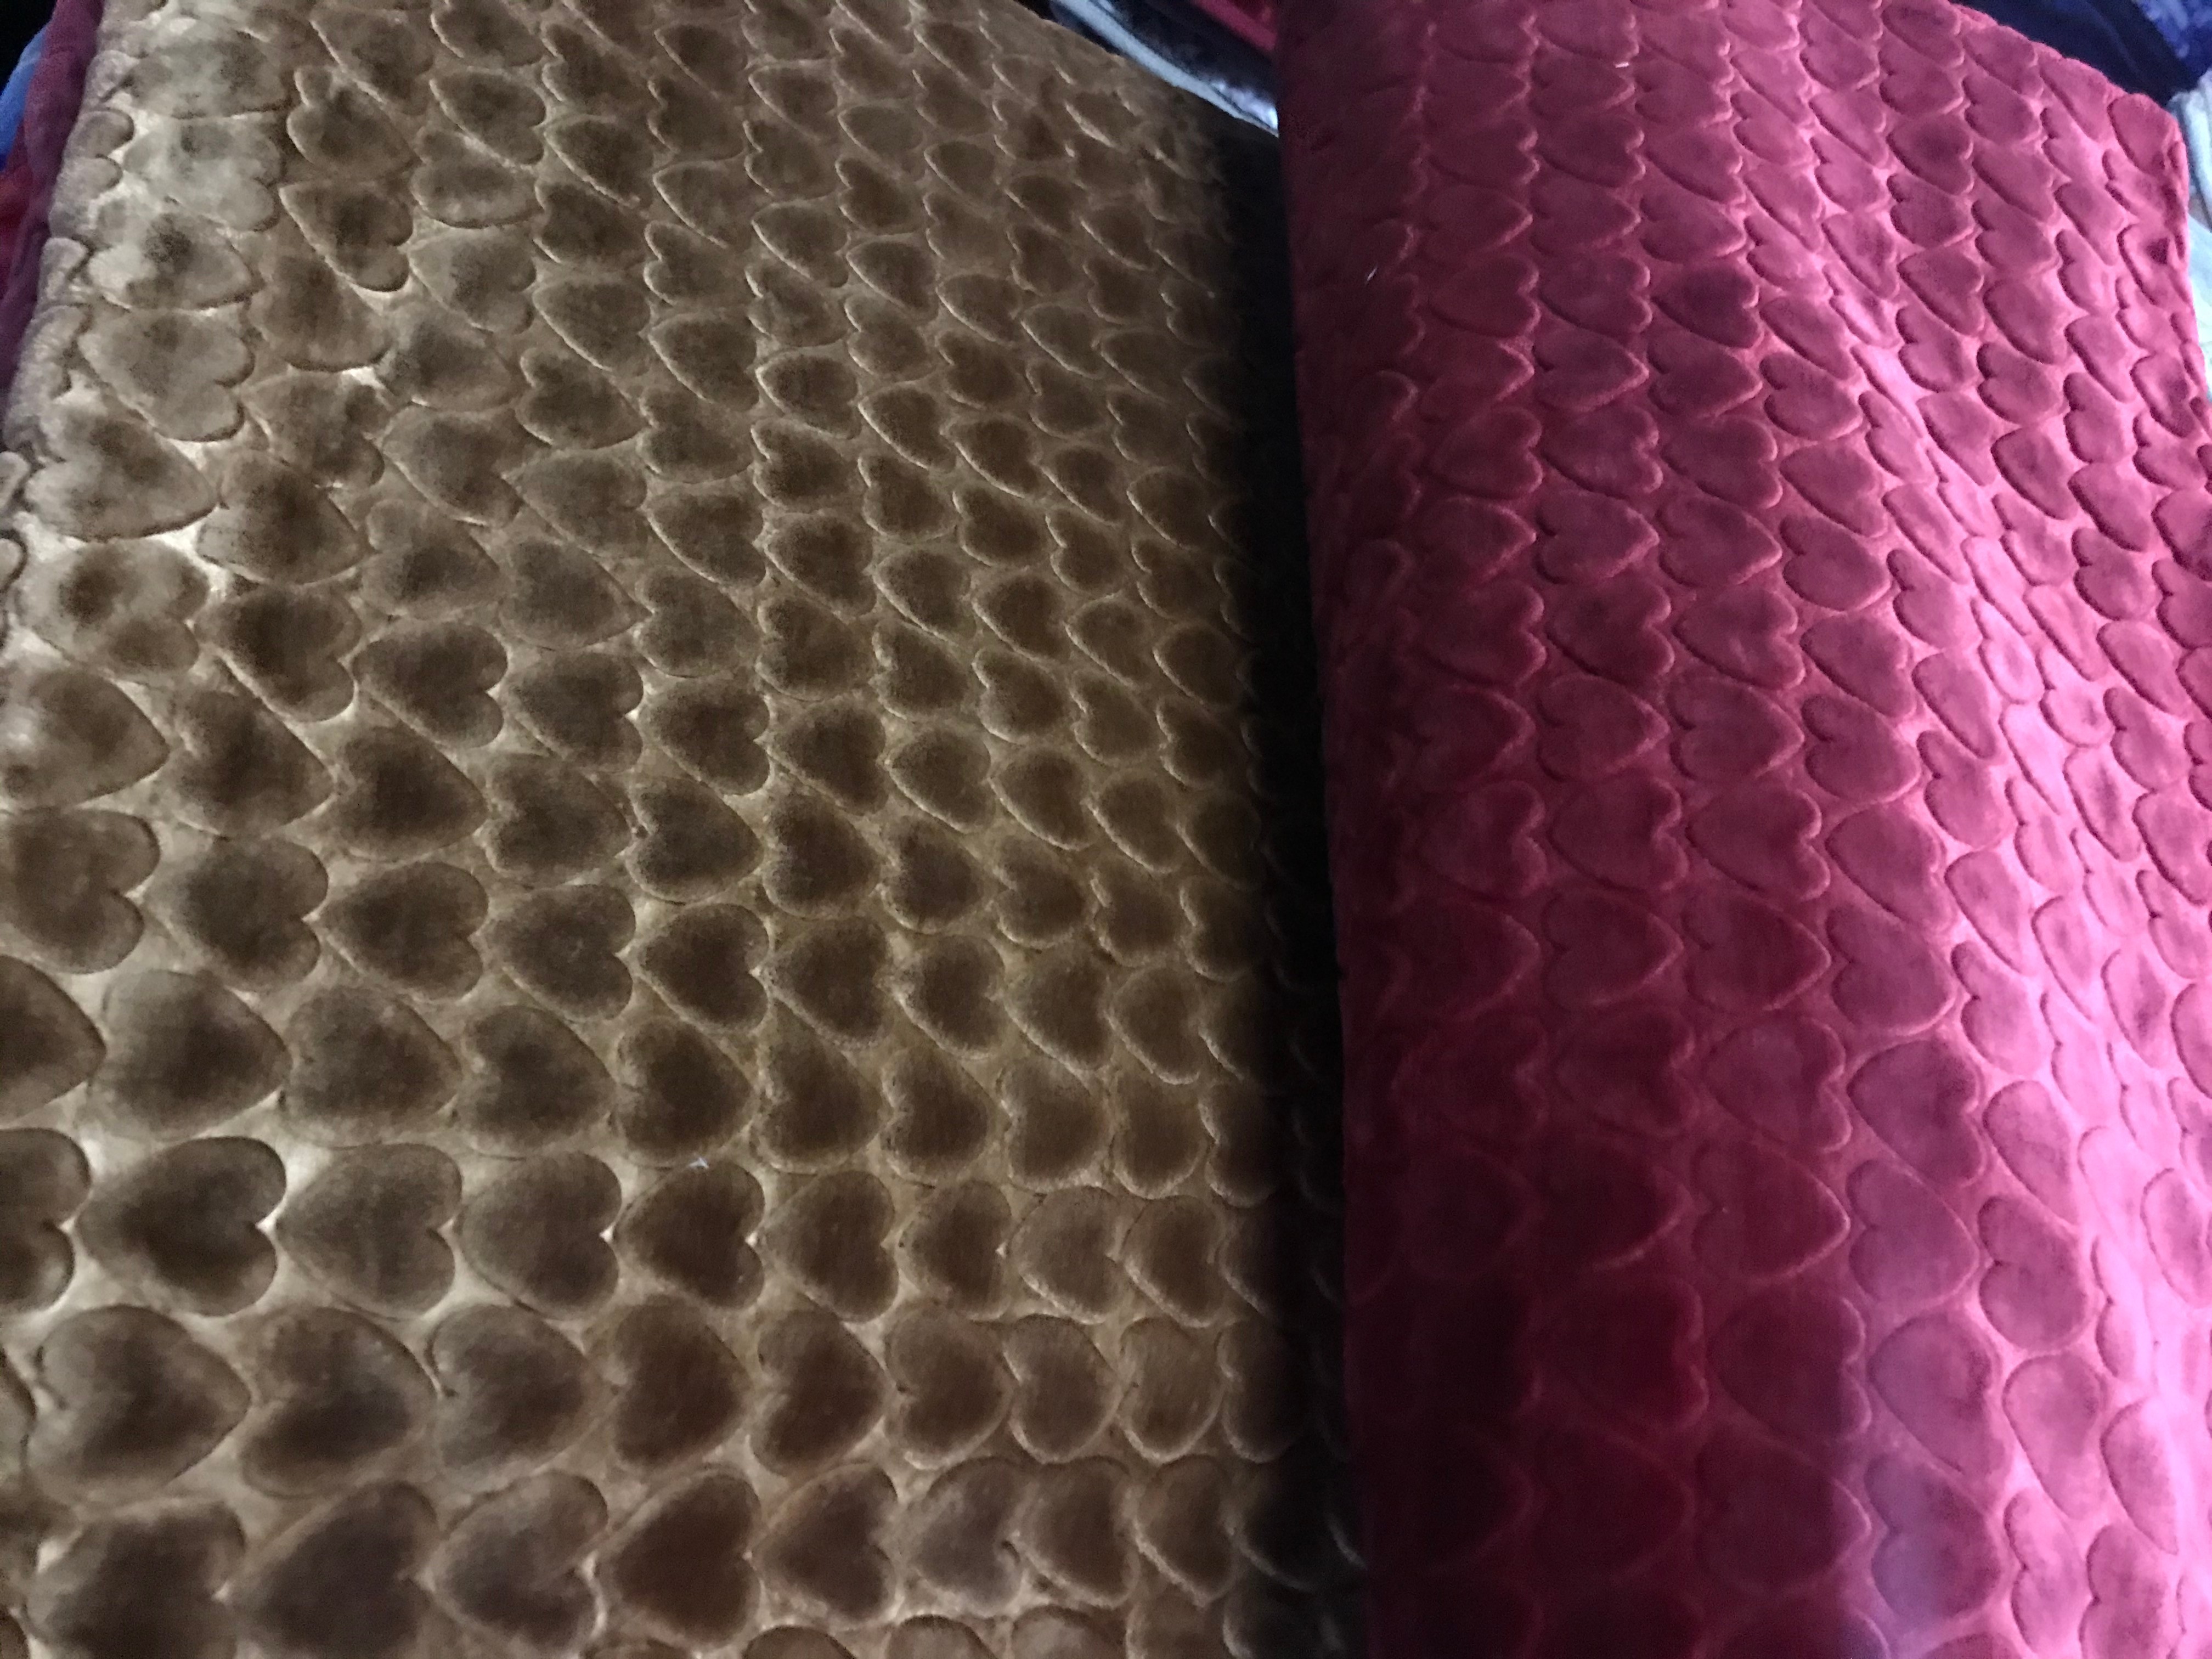 床上用品拉舍尔单层素色压花毛毯外贸毛毯详情图2